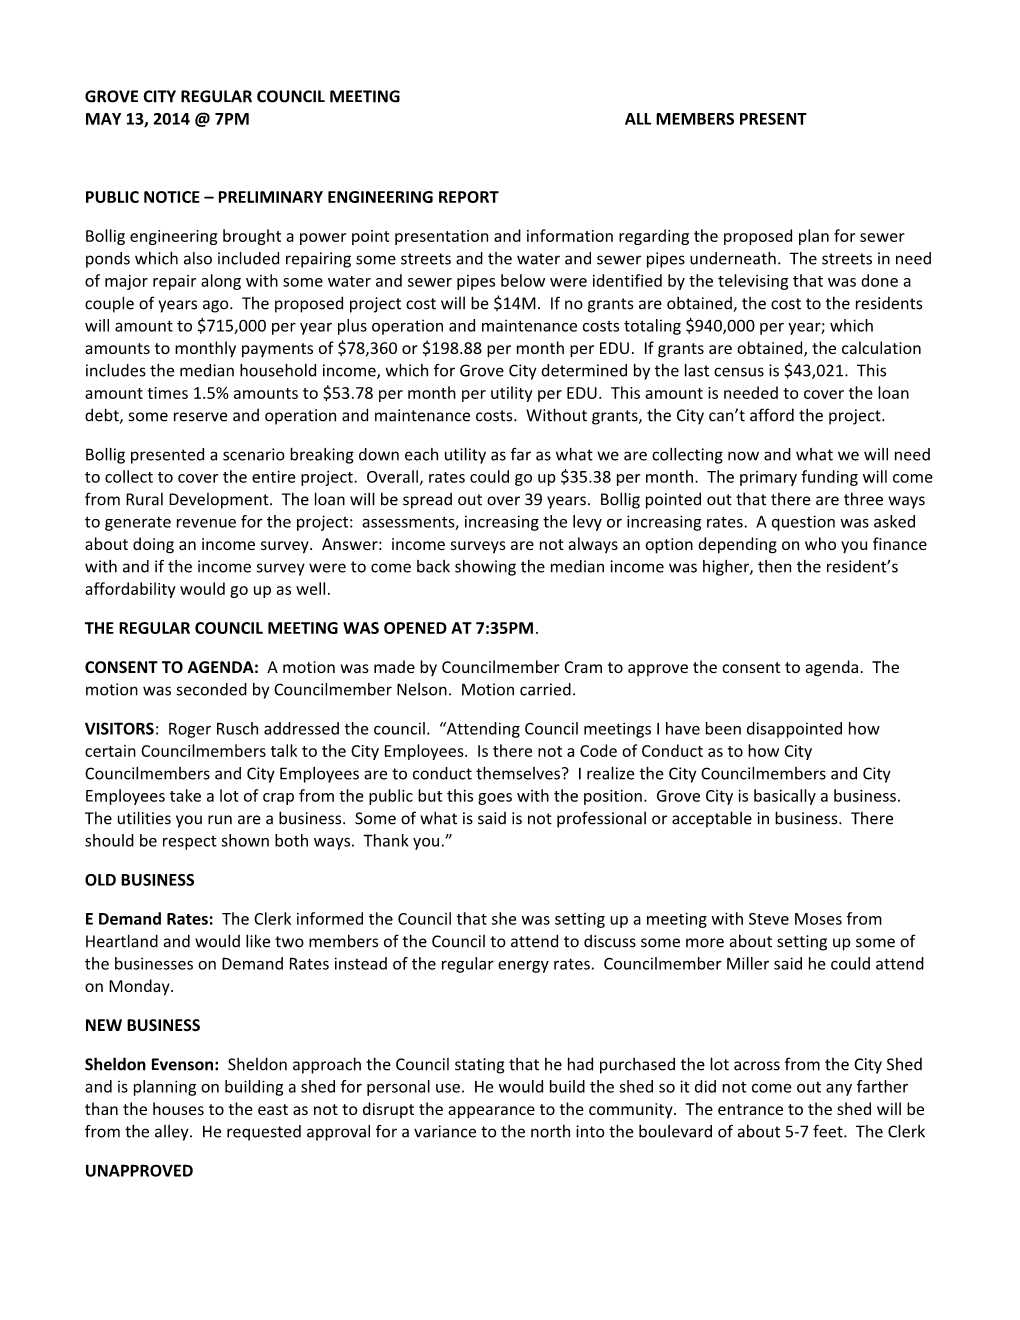 Public Notice Preliminary Engineering Report